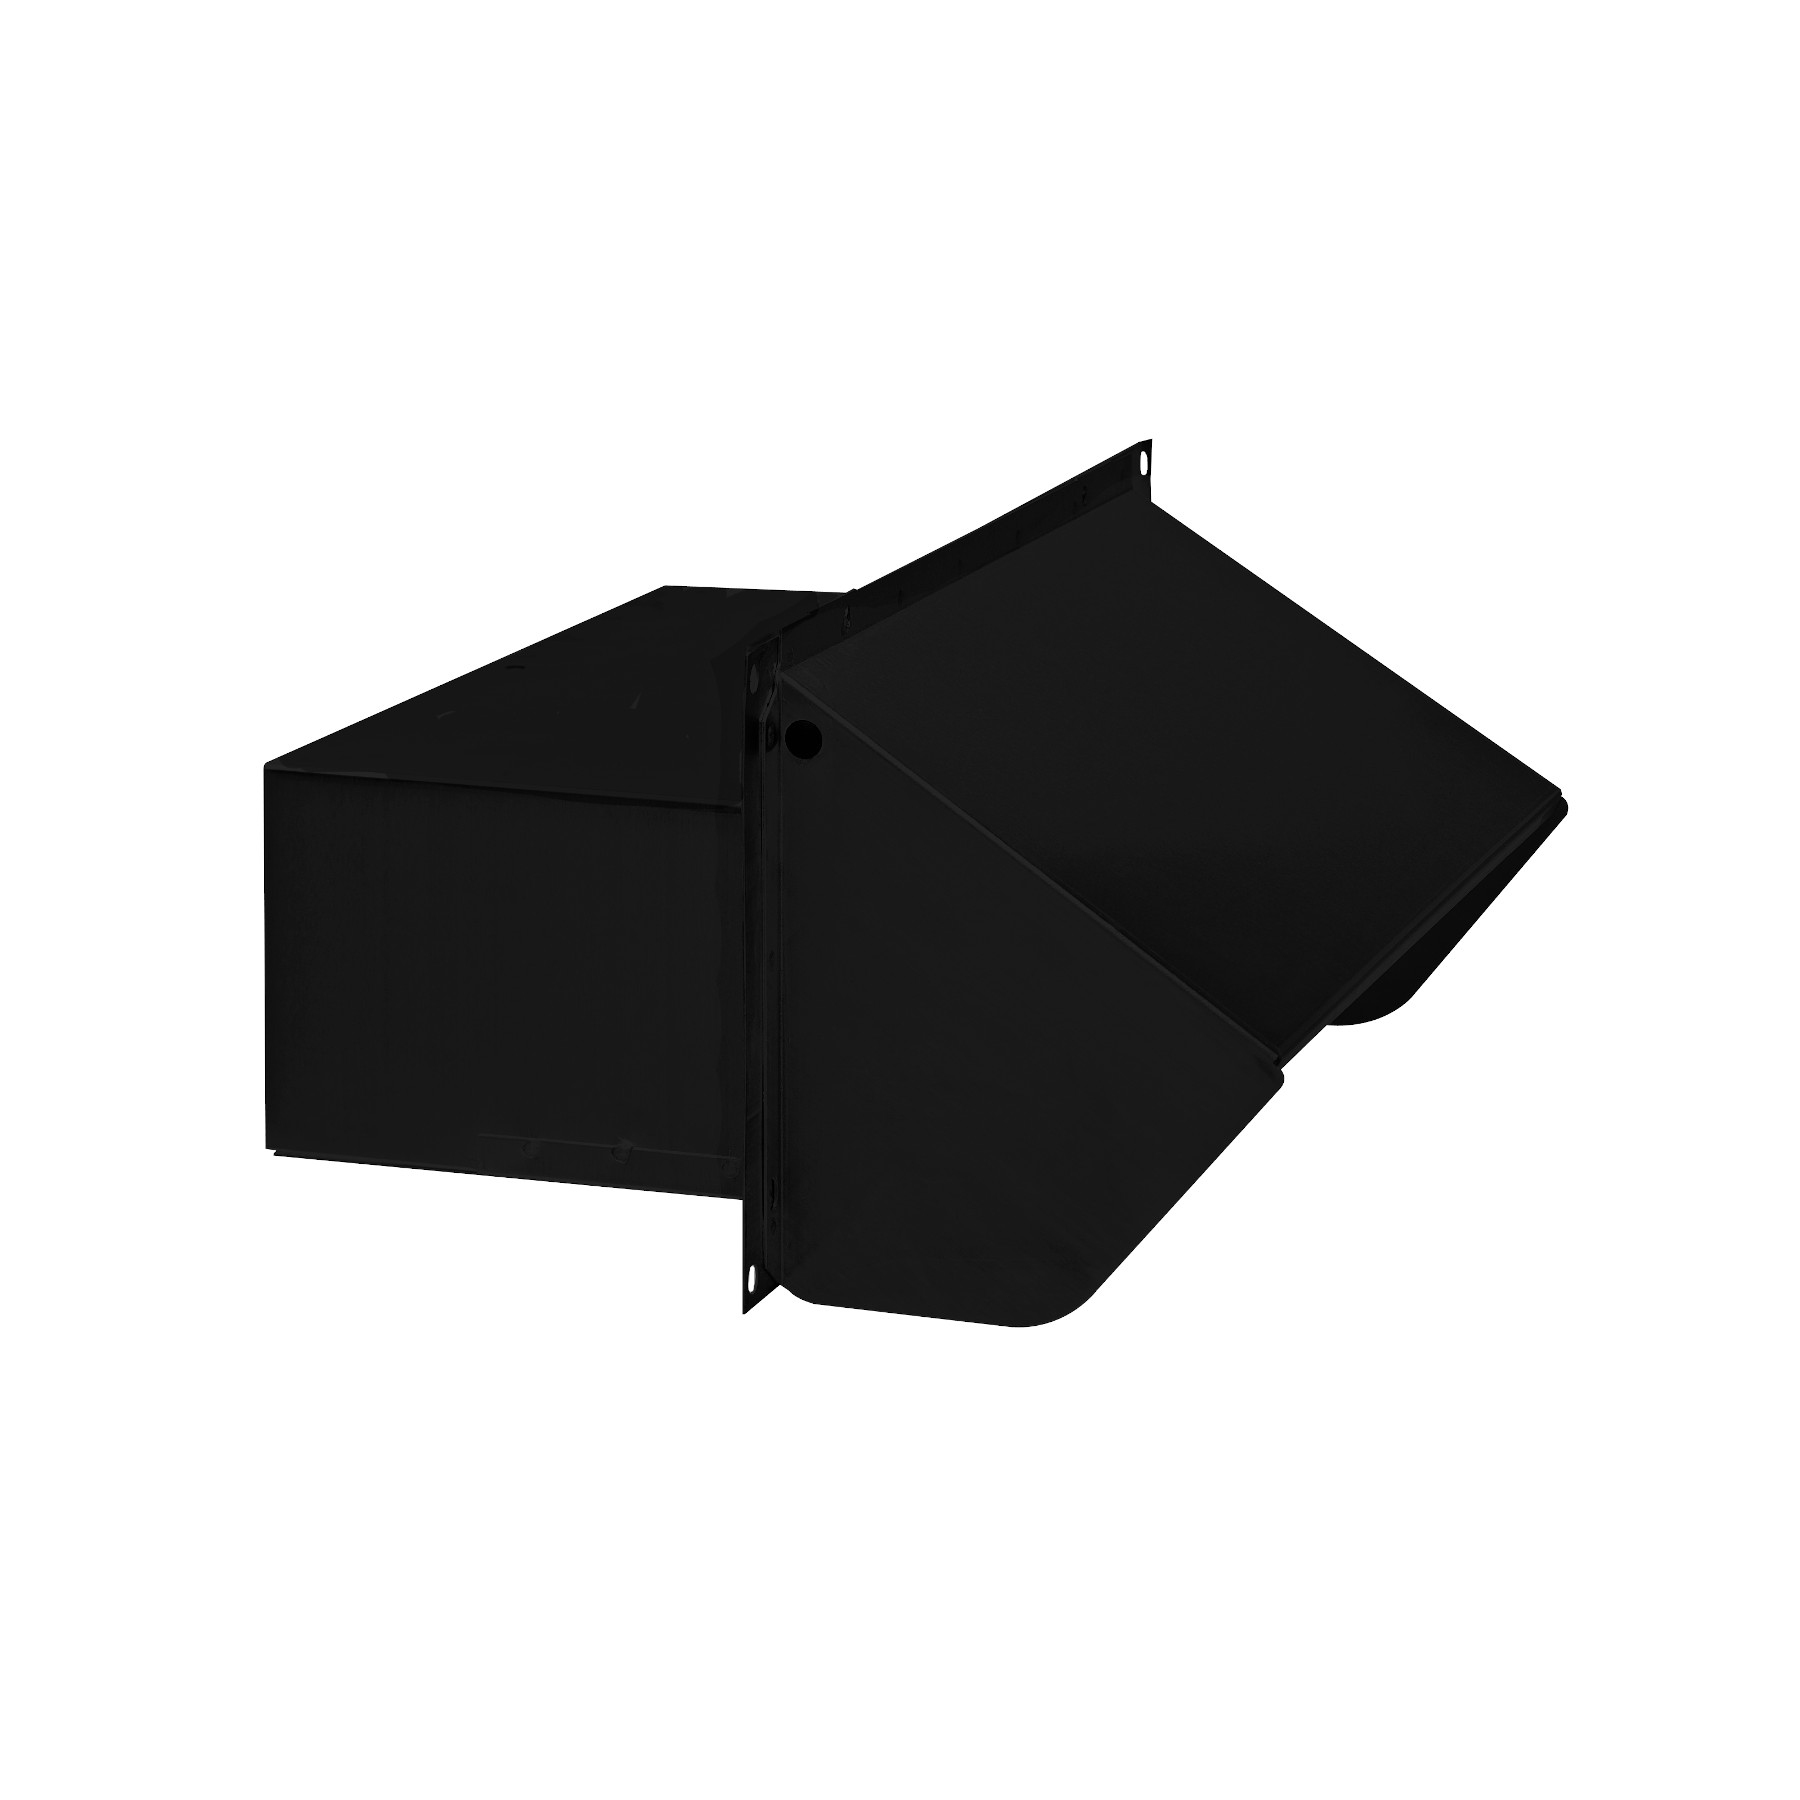 Évent de toiture en acier pour conduit de 3-1/4 po x 10 po de Broan-NuTone® avec volet antirefoulement, fini noir